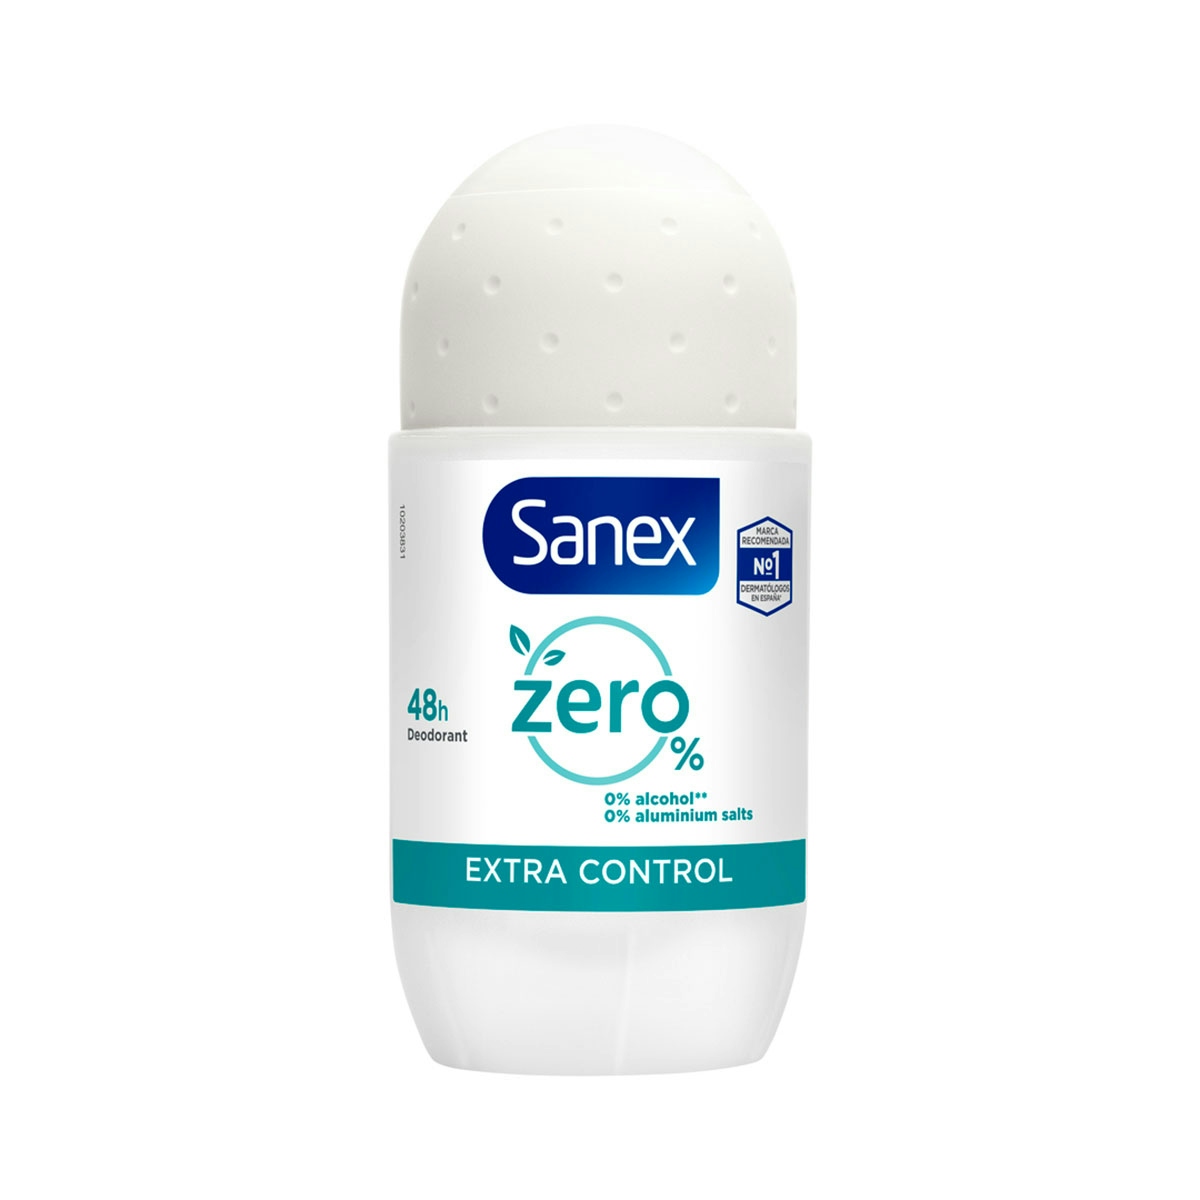 Desodorante roll-on Sanex Zero% Extra Control protección 48h 50ml